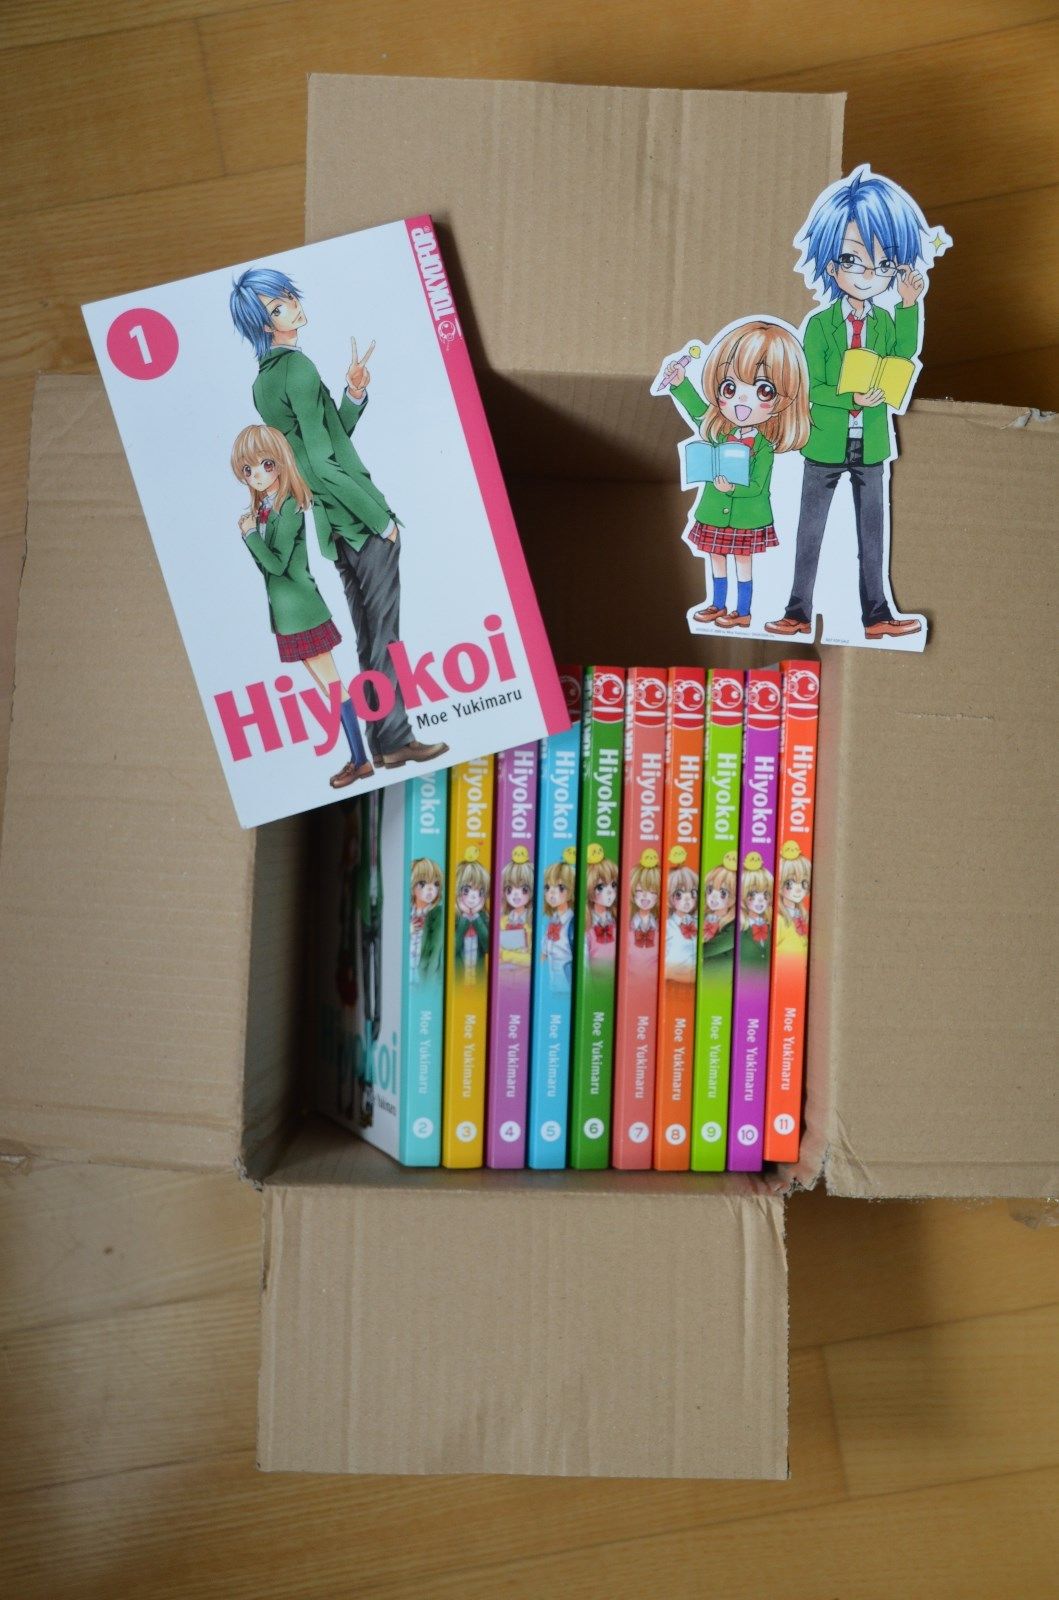 Hiyokoi von Moe Yukimaru, erschienen im Tokyopop Verlag 11 Bände 1-11